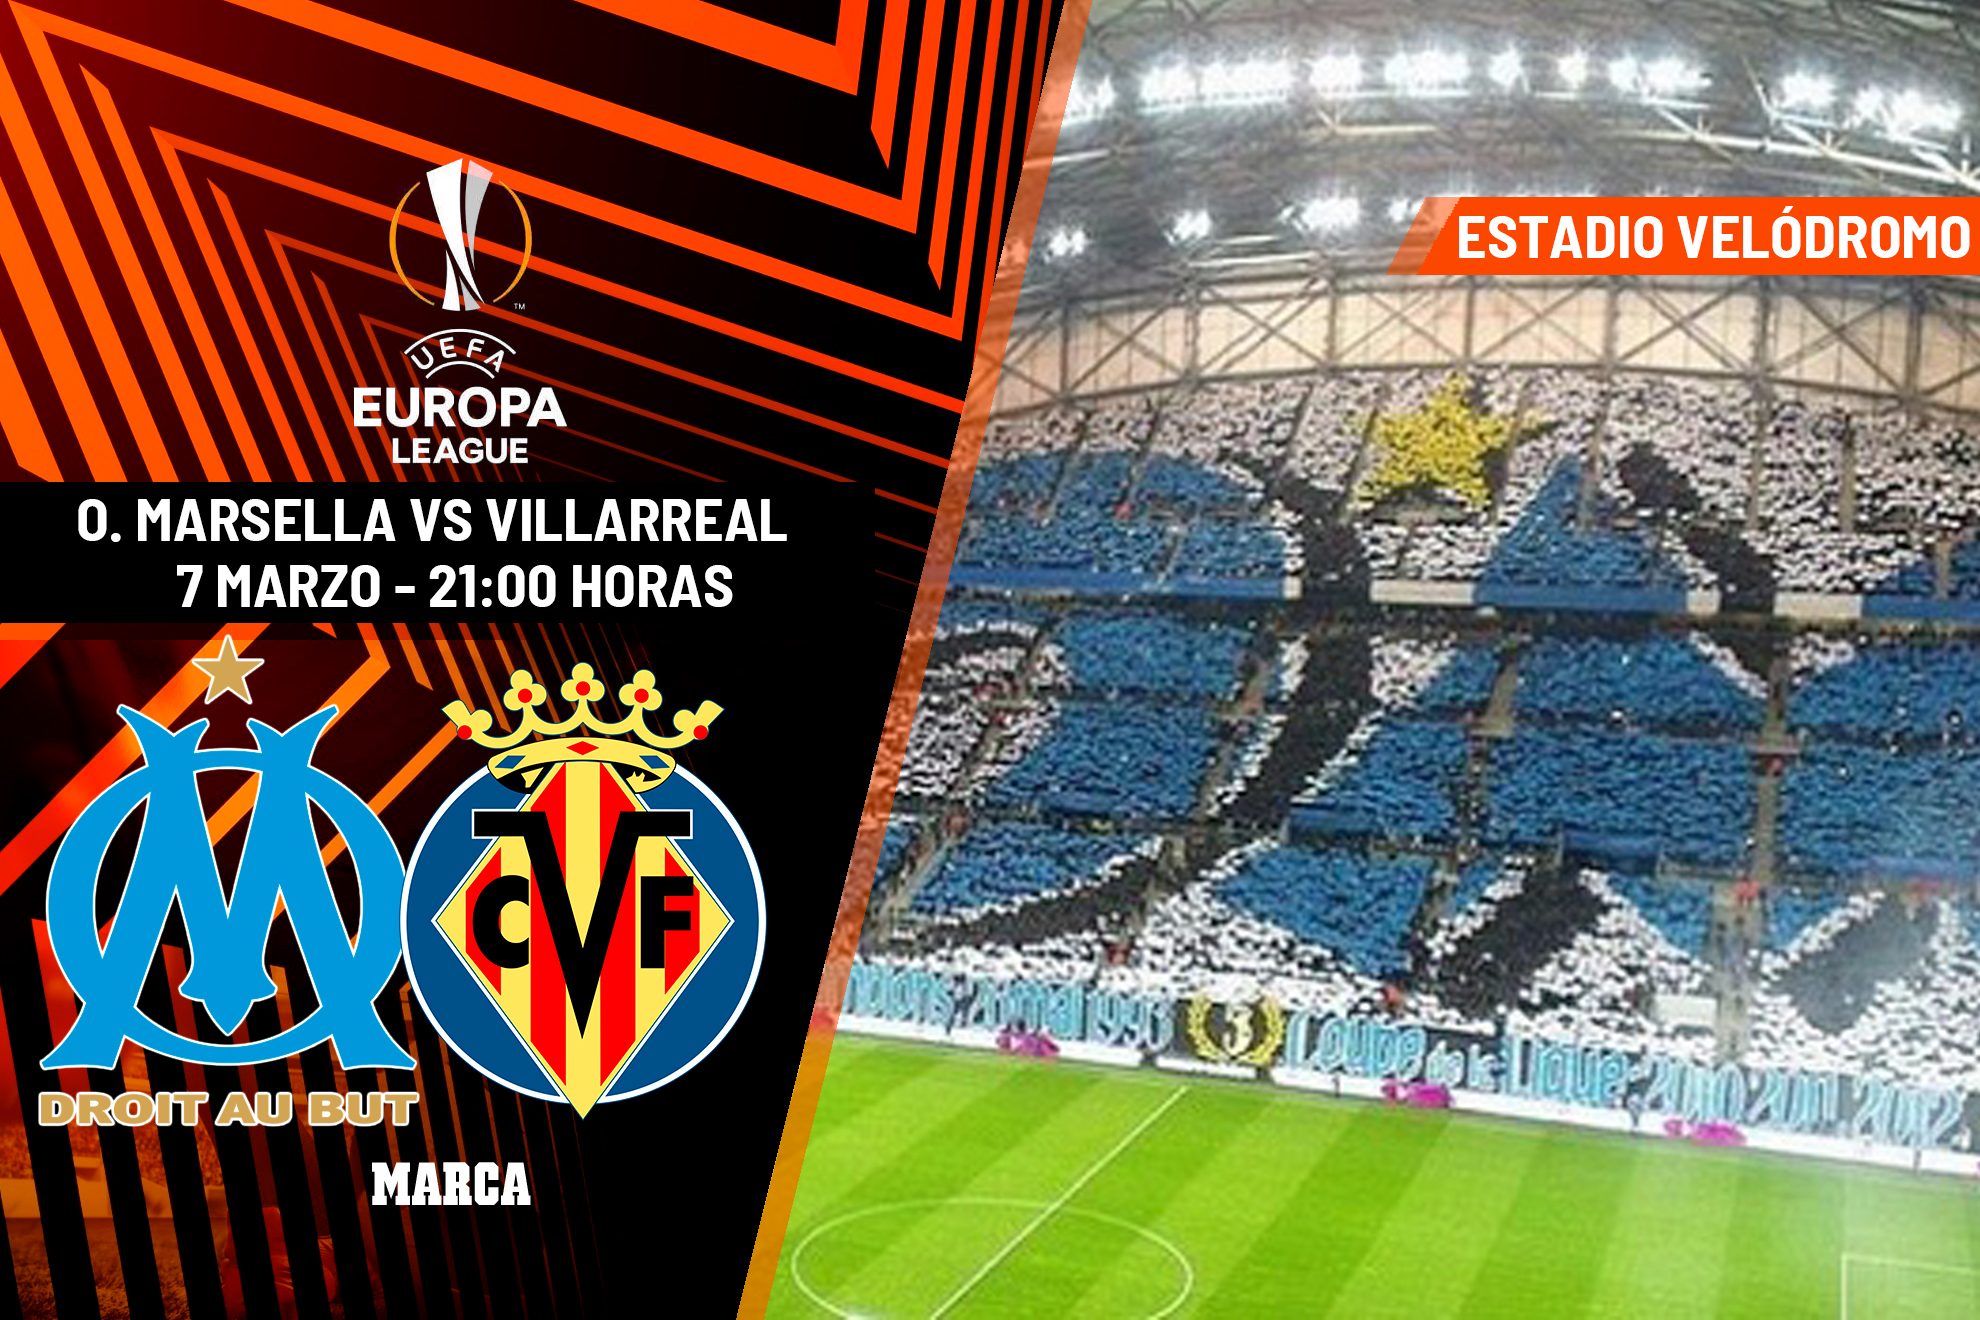 Olympique de Marsella - Villarreal, en directo | Europa League en vivo hoy